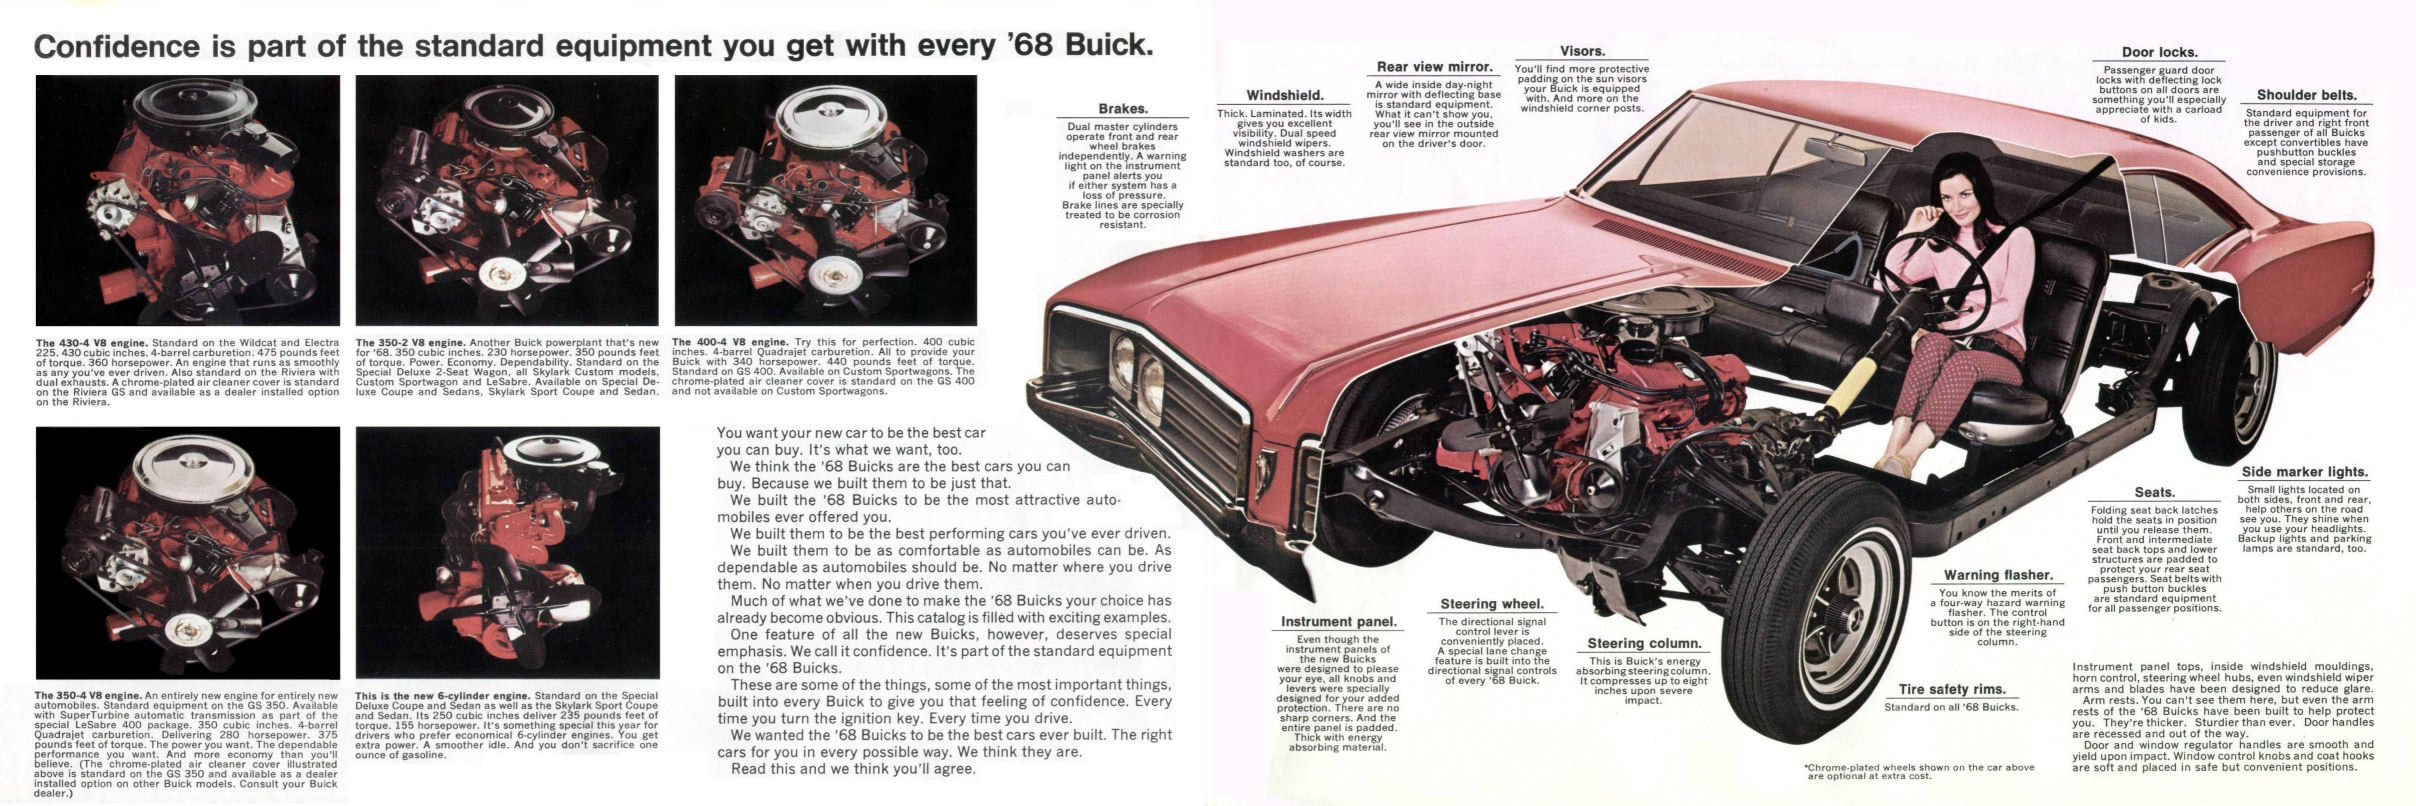 1968 Buick Full Line-10-11